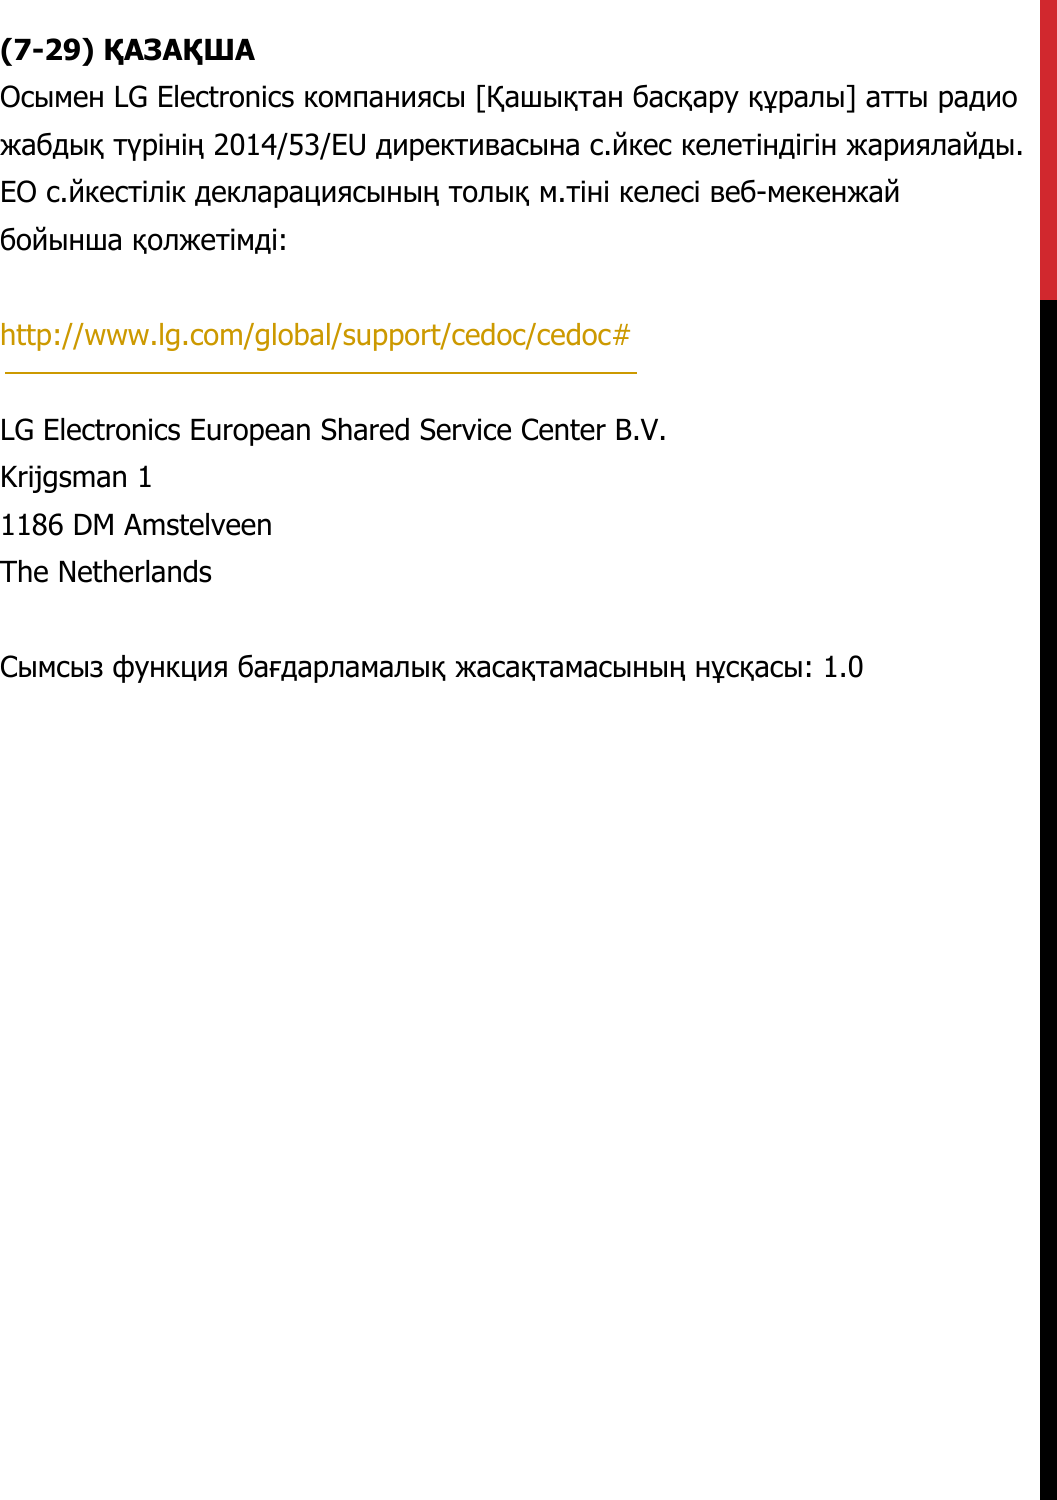 (7-29) ҚАЗАҚШАОсымен LG Electronics компаниясы [Қашықтан басқару құралы] атты радио жабдық түрінің 2014/53/EU директивасына с.йкес келетіндігін жариялайды. ЕО с.йкестілік декларациясының толық м.тіні келесі веб-мекенжай бойынша қолжетімді:   http://www.lg.com/global/support/cedoc/cedoc#   LG Electronics European Shared Service Center B.V.  Krijgsman 1  1186 DM Amstelveen  The Netherlands   Сымсыз функция бағдарламалық жасақтамасының нұсқасы: 1.0